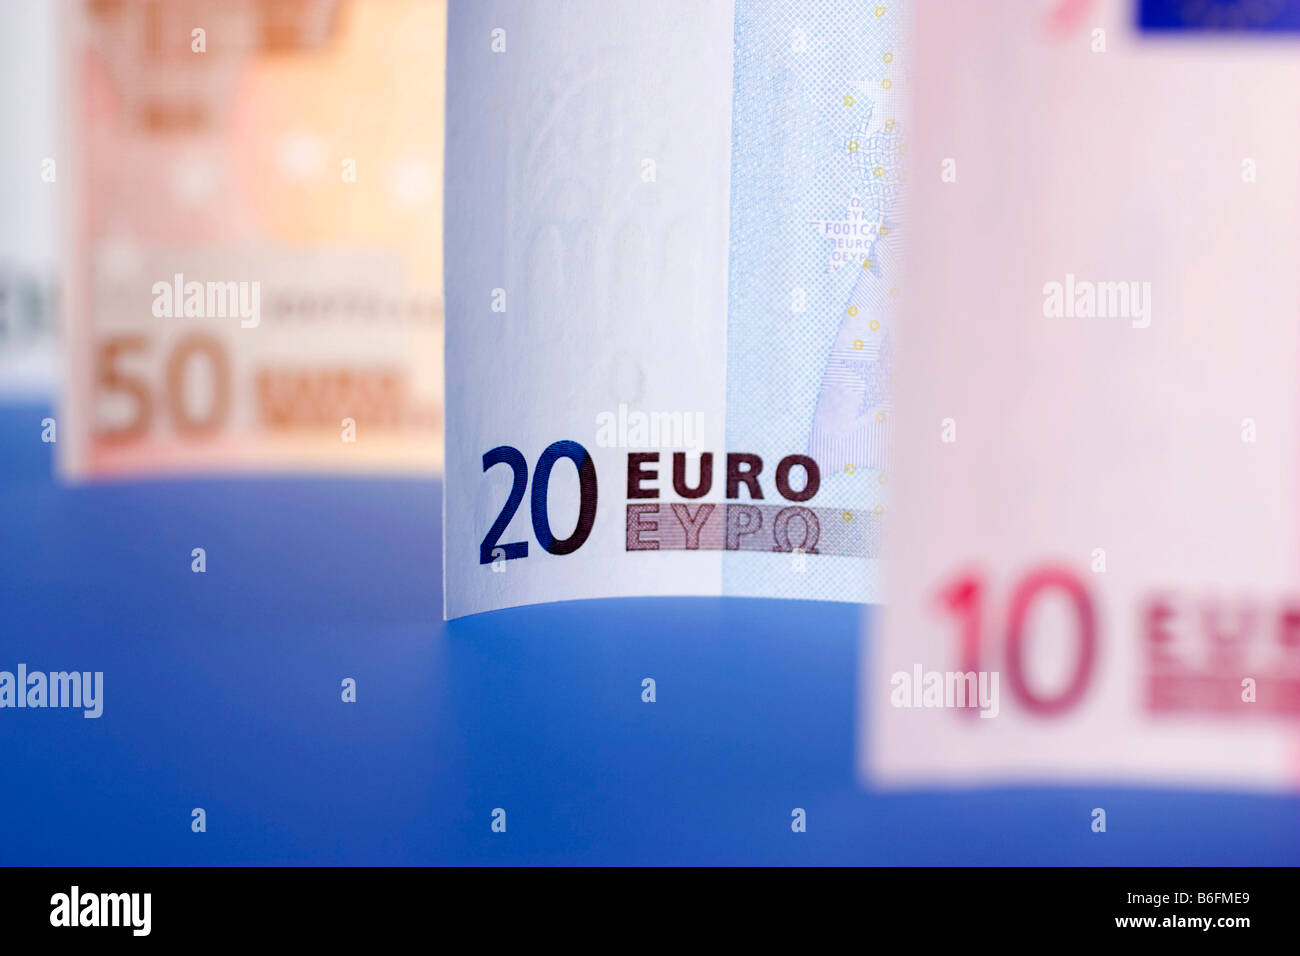 Euro-bills Stock Photo